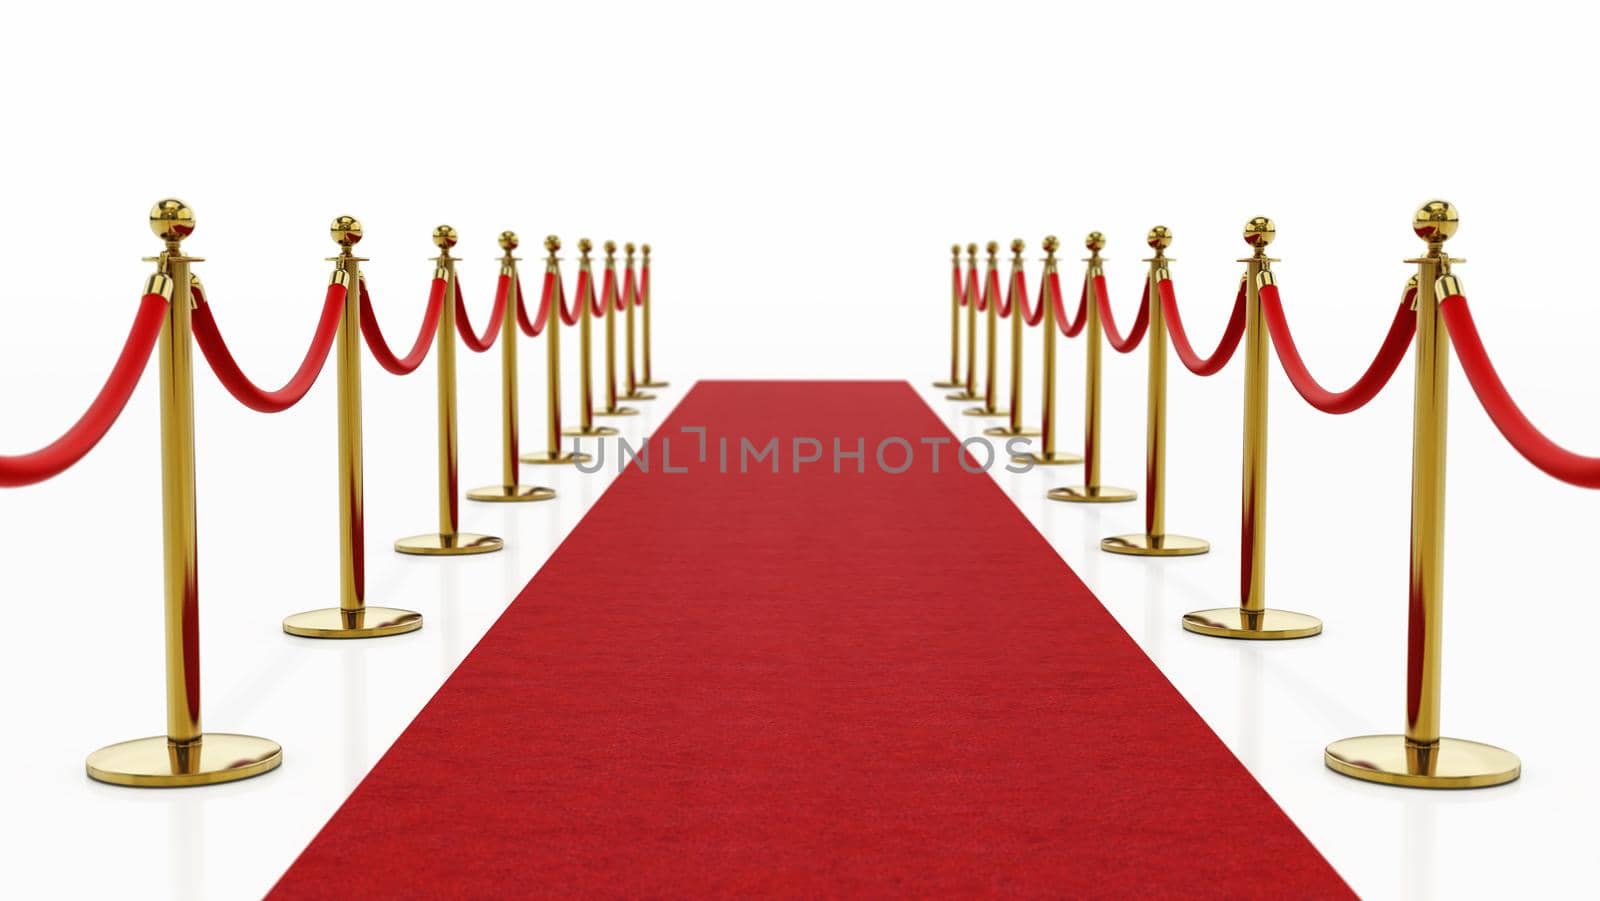 Red carpet and velvet ropes isolated on white background. 3D illustration.